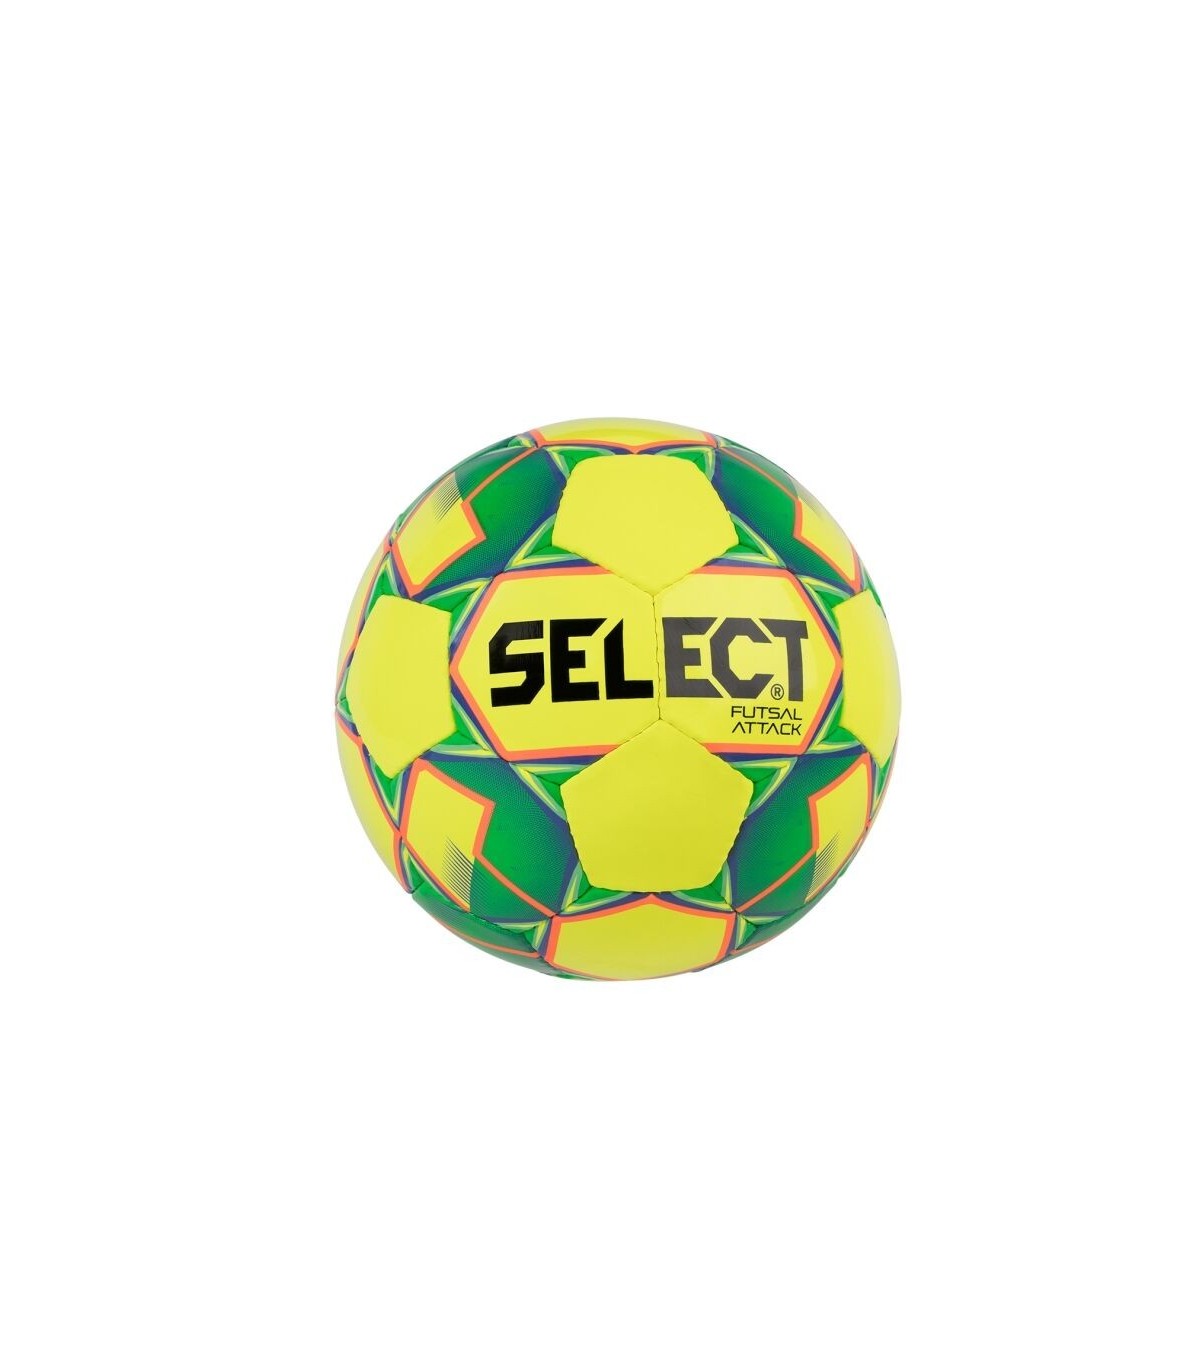 microscoop Acquiesce Proficiat Voetbal Select Futsal Attack geel - groen